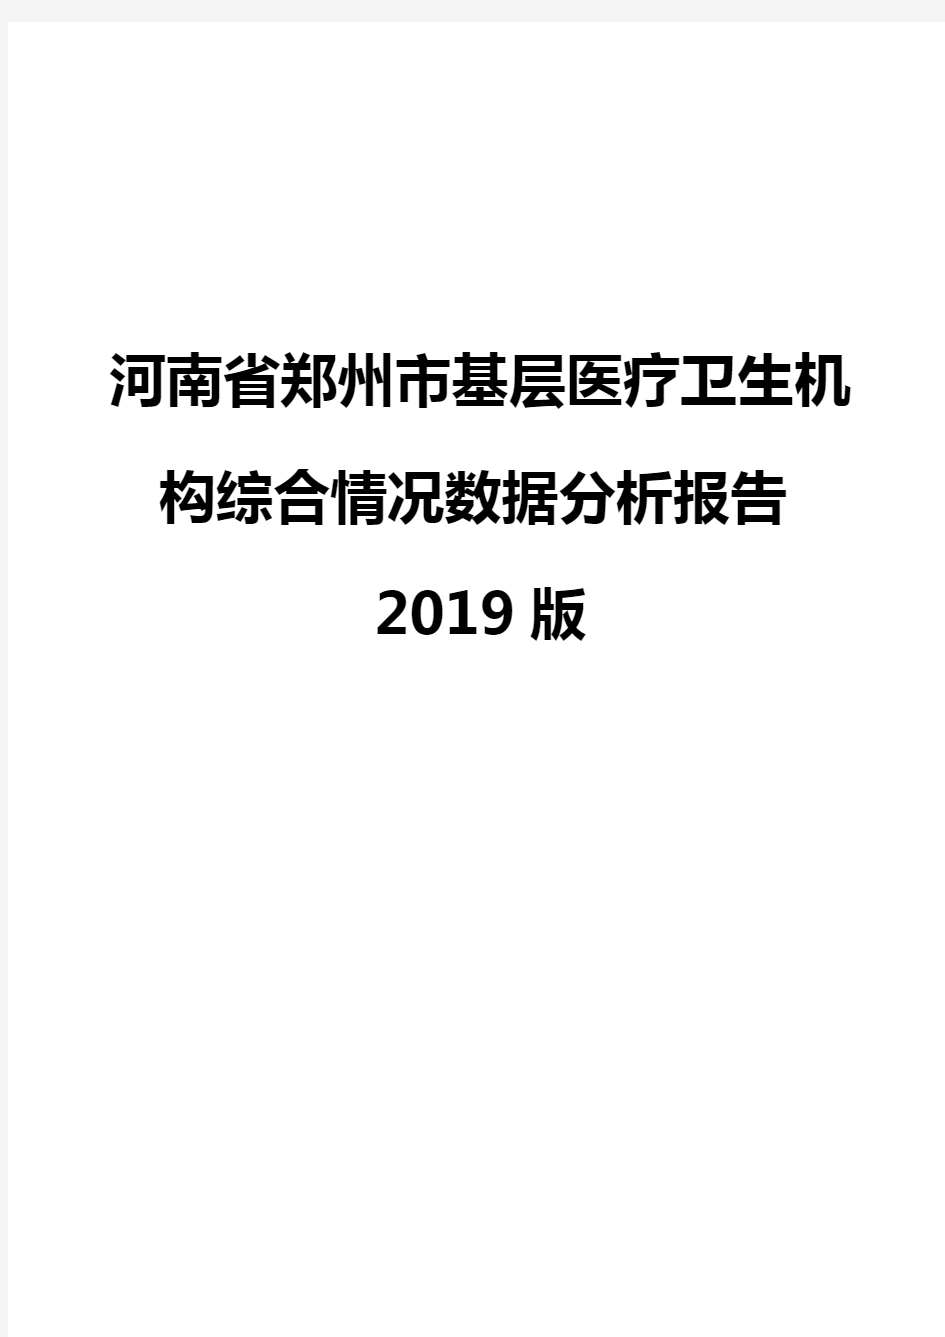 河南省郑州市基层医疗卫生机构综合情况数据分析报告2019版